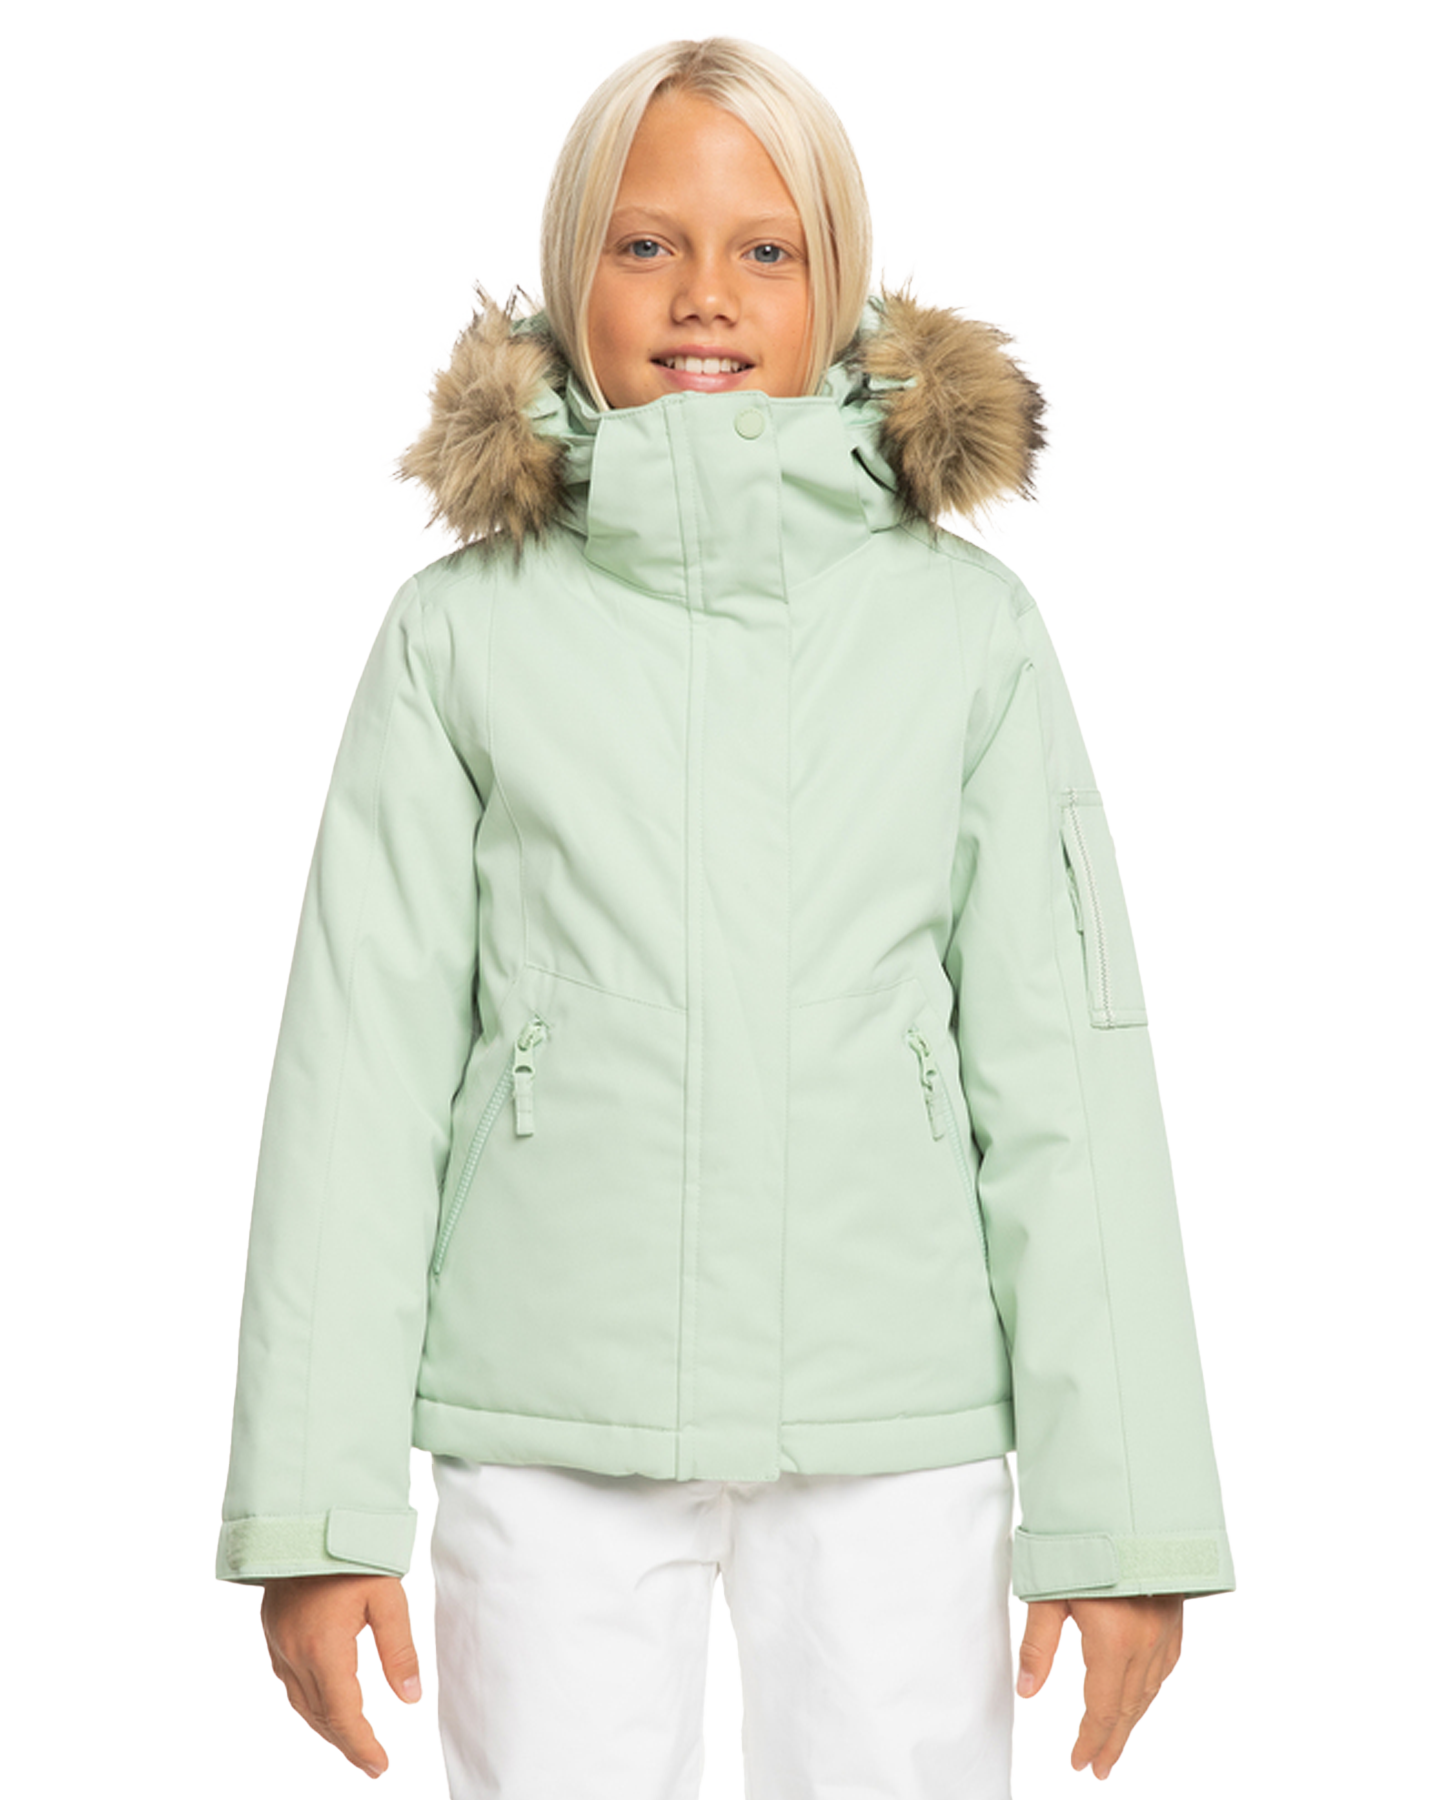 Roxy Girls' 8-16 Meade Technical Snow Jacket - Cameo Green Kids' Snow Jackets - Trojan Wake Ski Snow